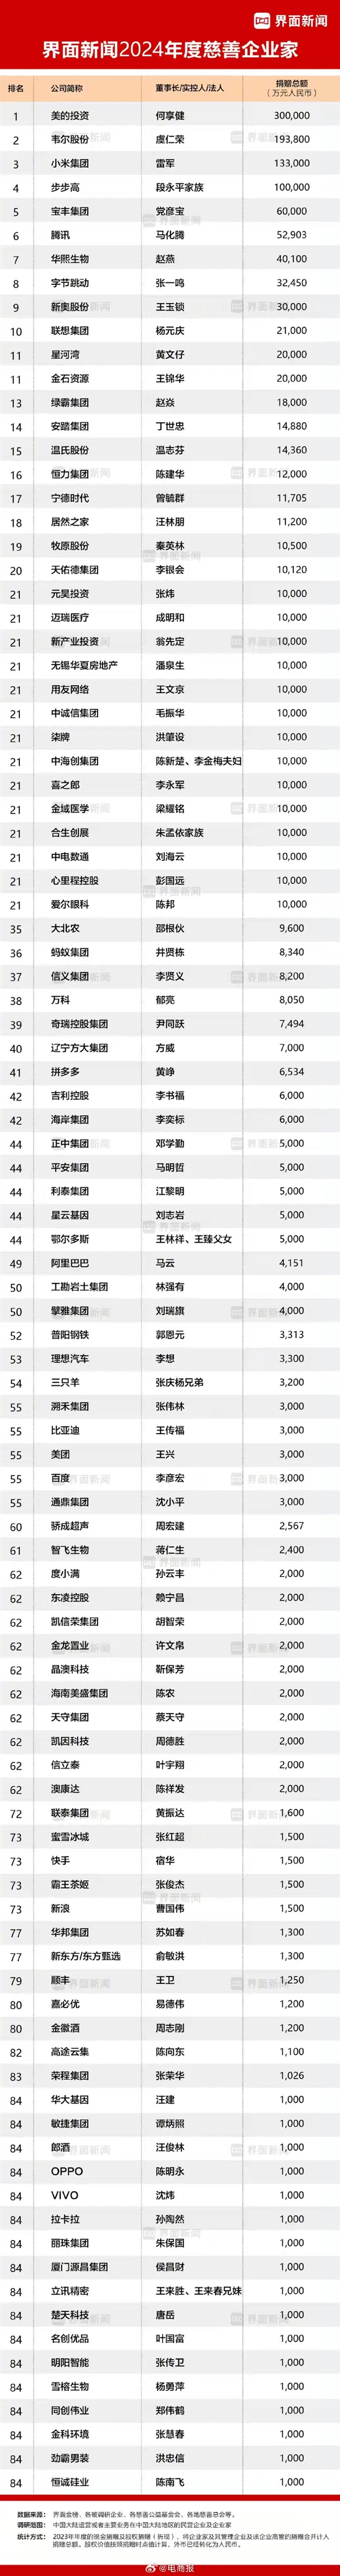 2024年度慈善企业家排行榜：小米雷军、腾讯马化腾、字节张一鸣位列前十  第1张